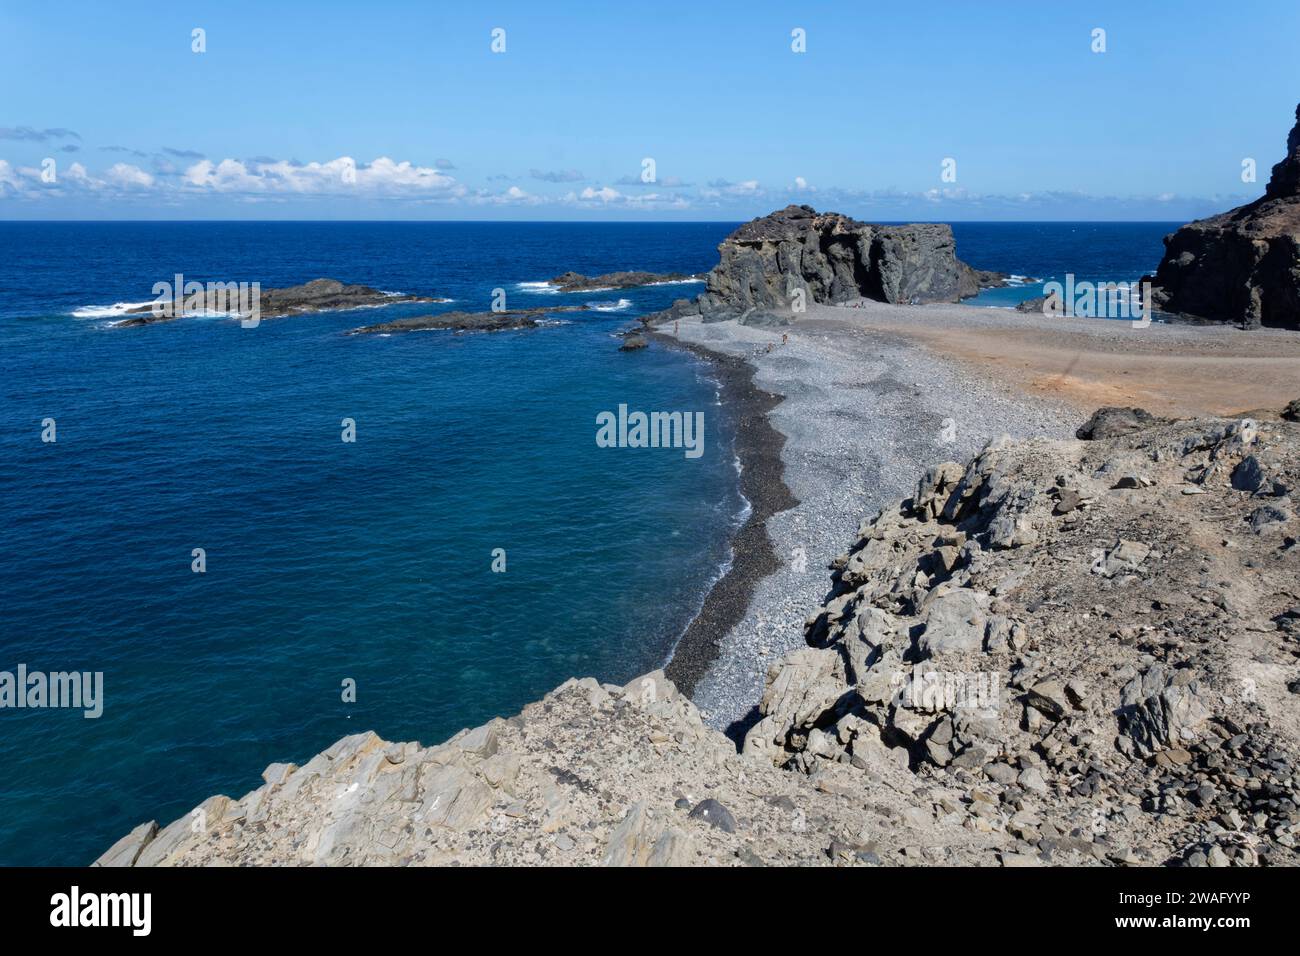 Vue d'ensemble de la plage Playa del Jurado, près d'Ajuy, côte ouest de Fuerteventura, îles Canaries, septembre. Banque D'Images